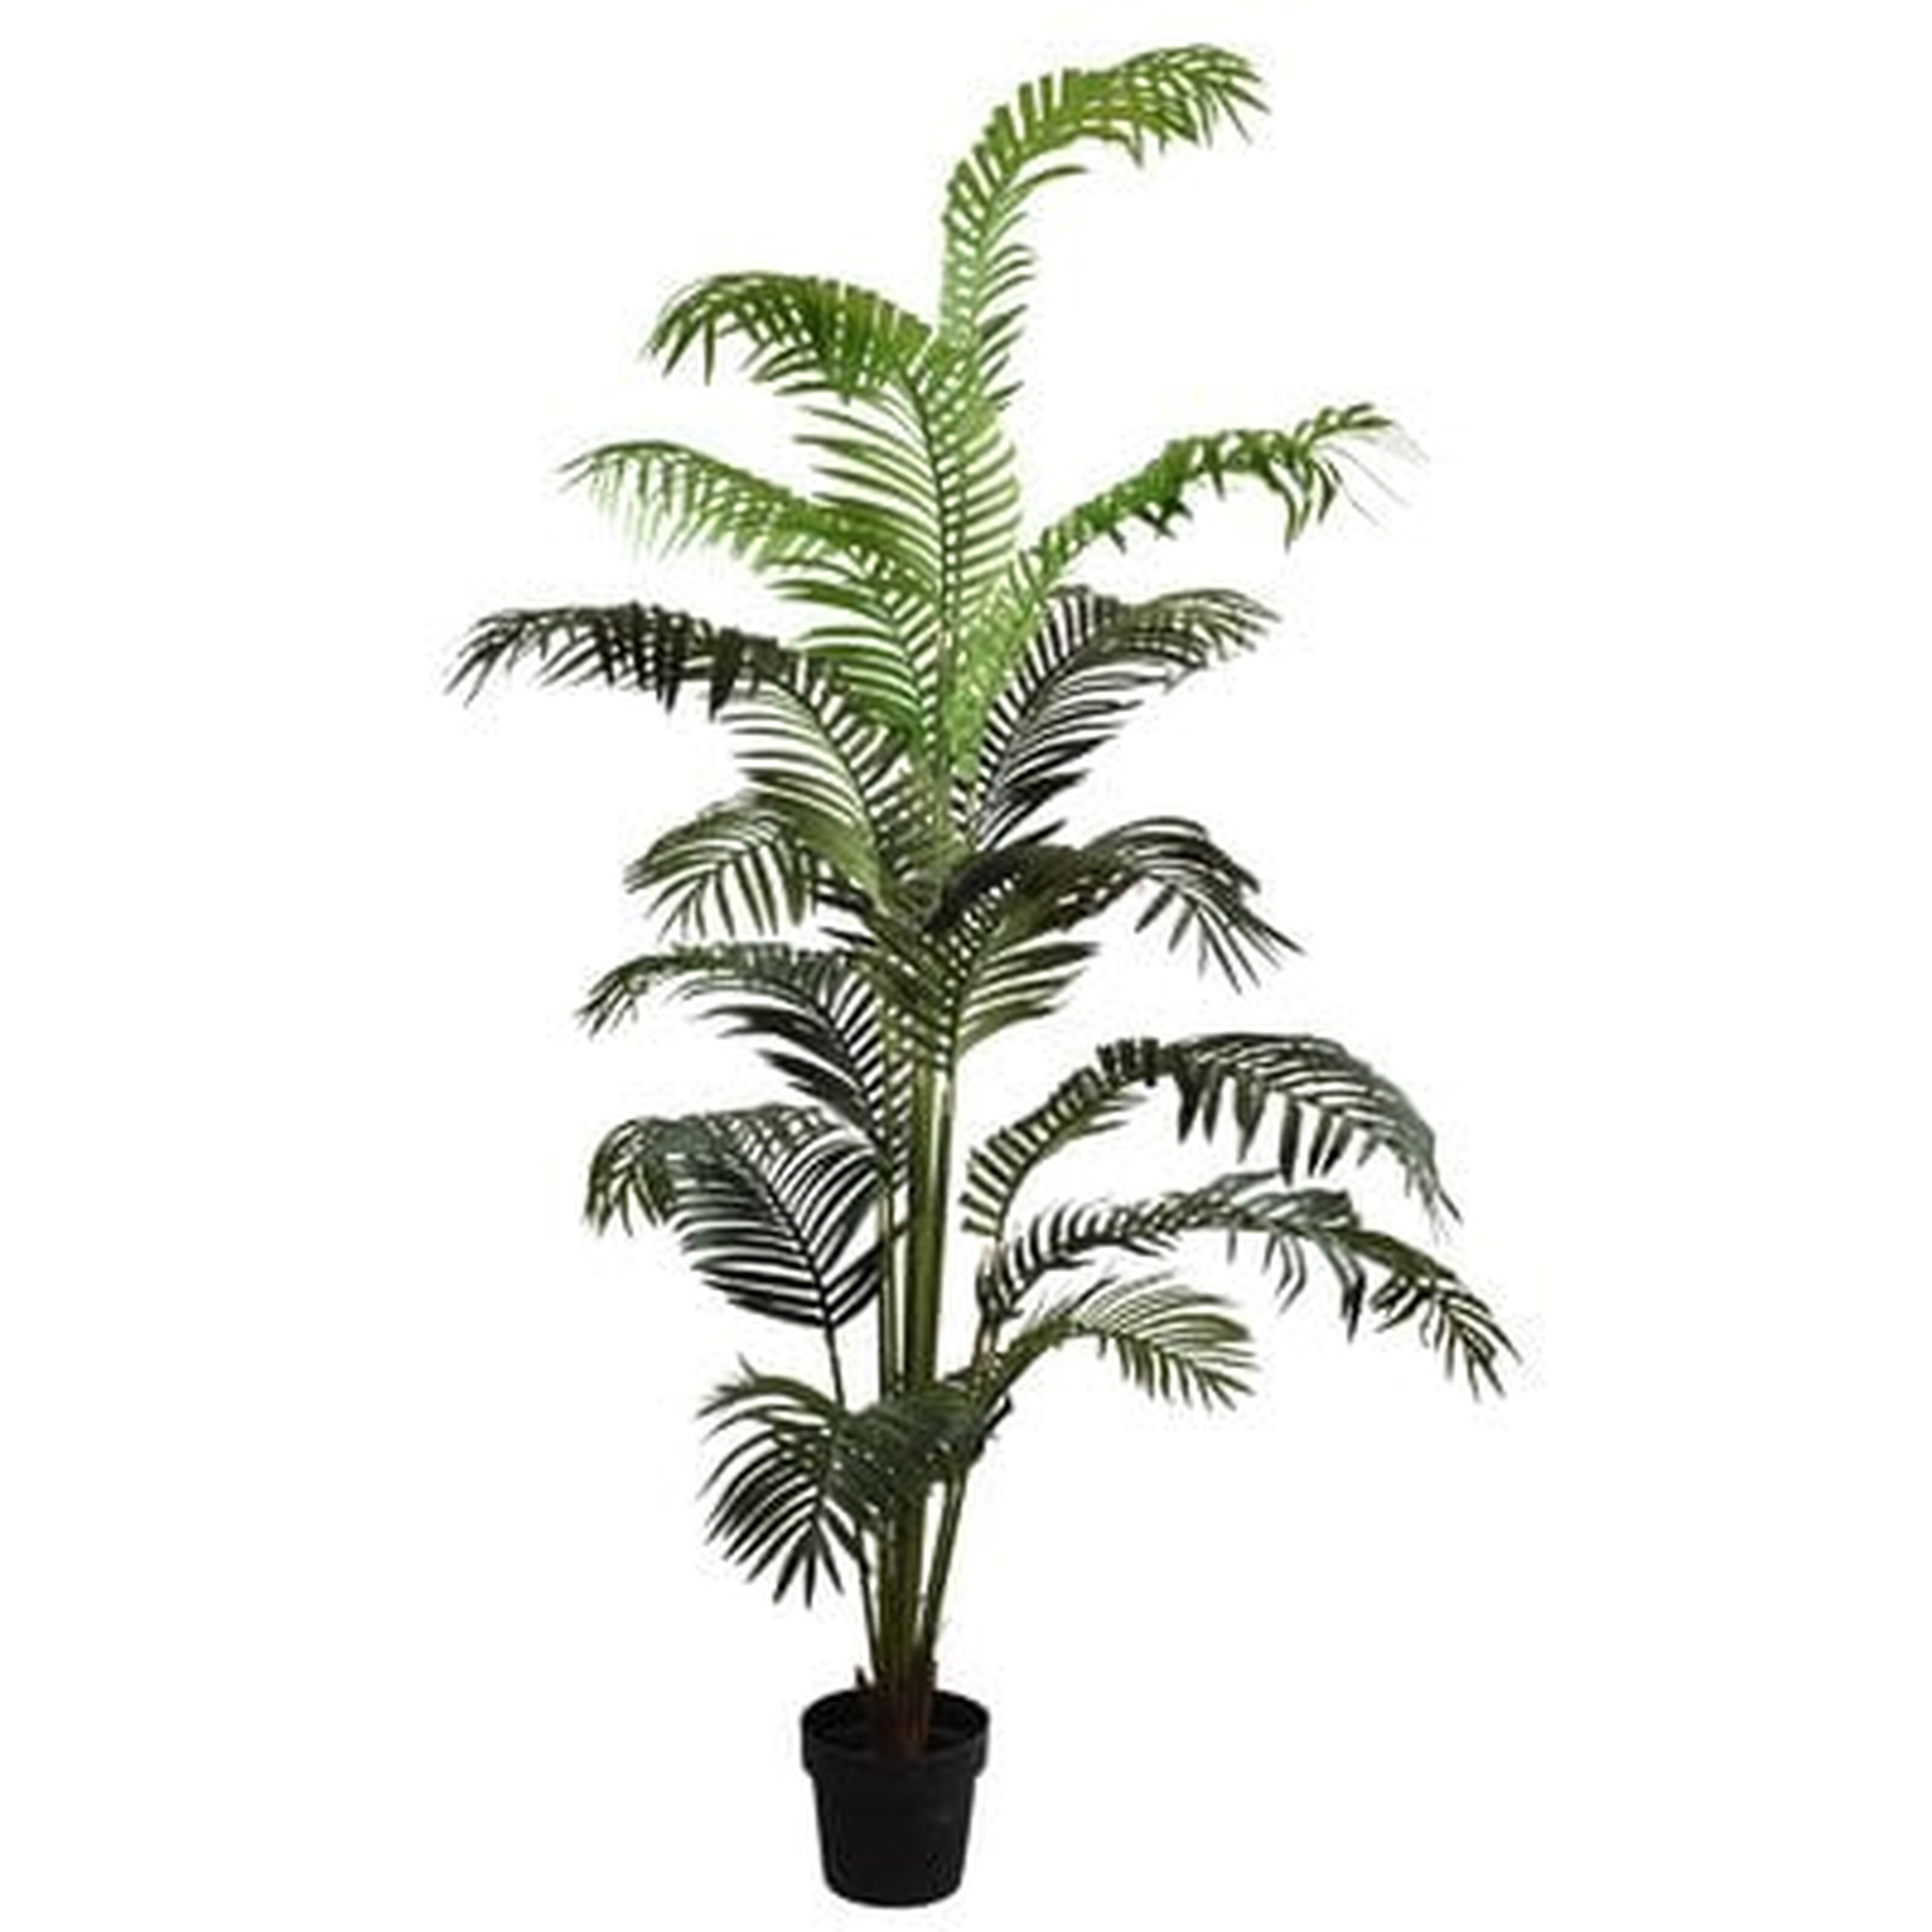 Palm Tree in Pot - Wayfair